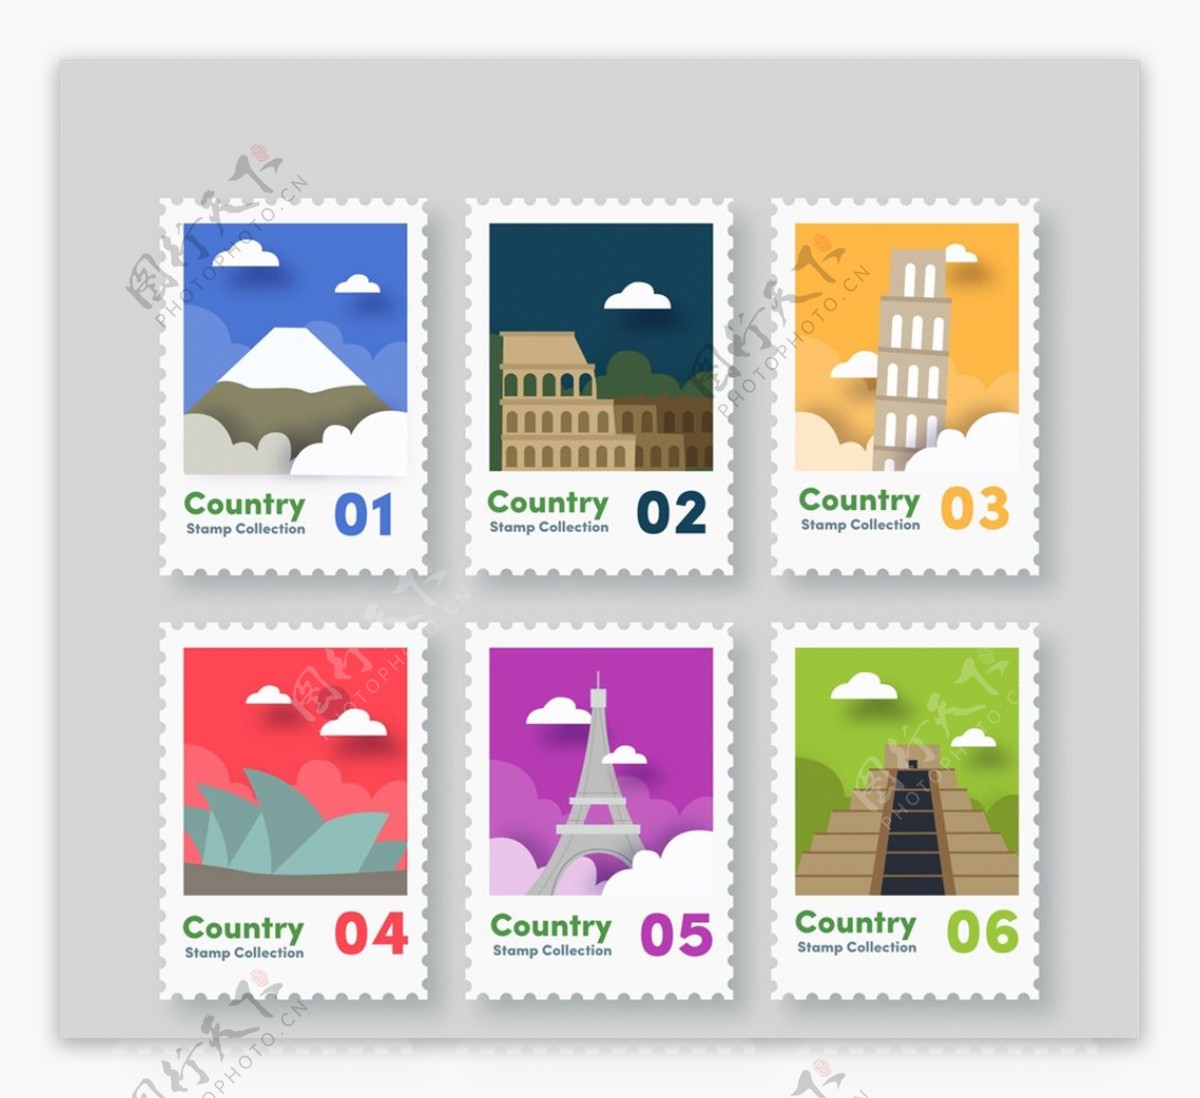 旅游城市邮票图片